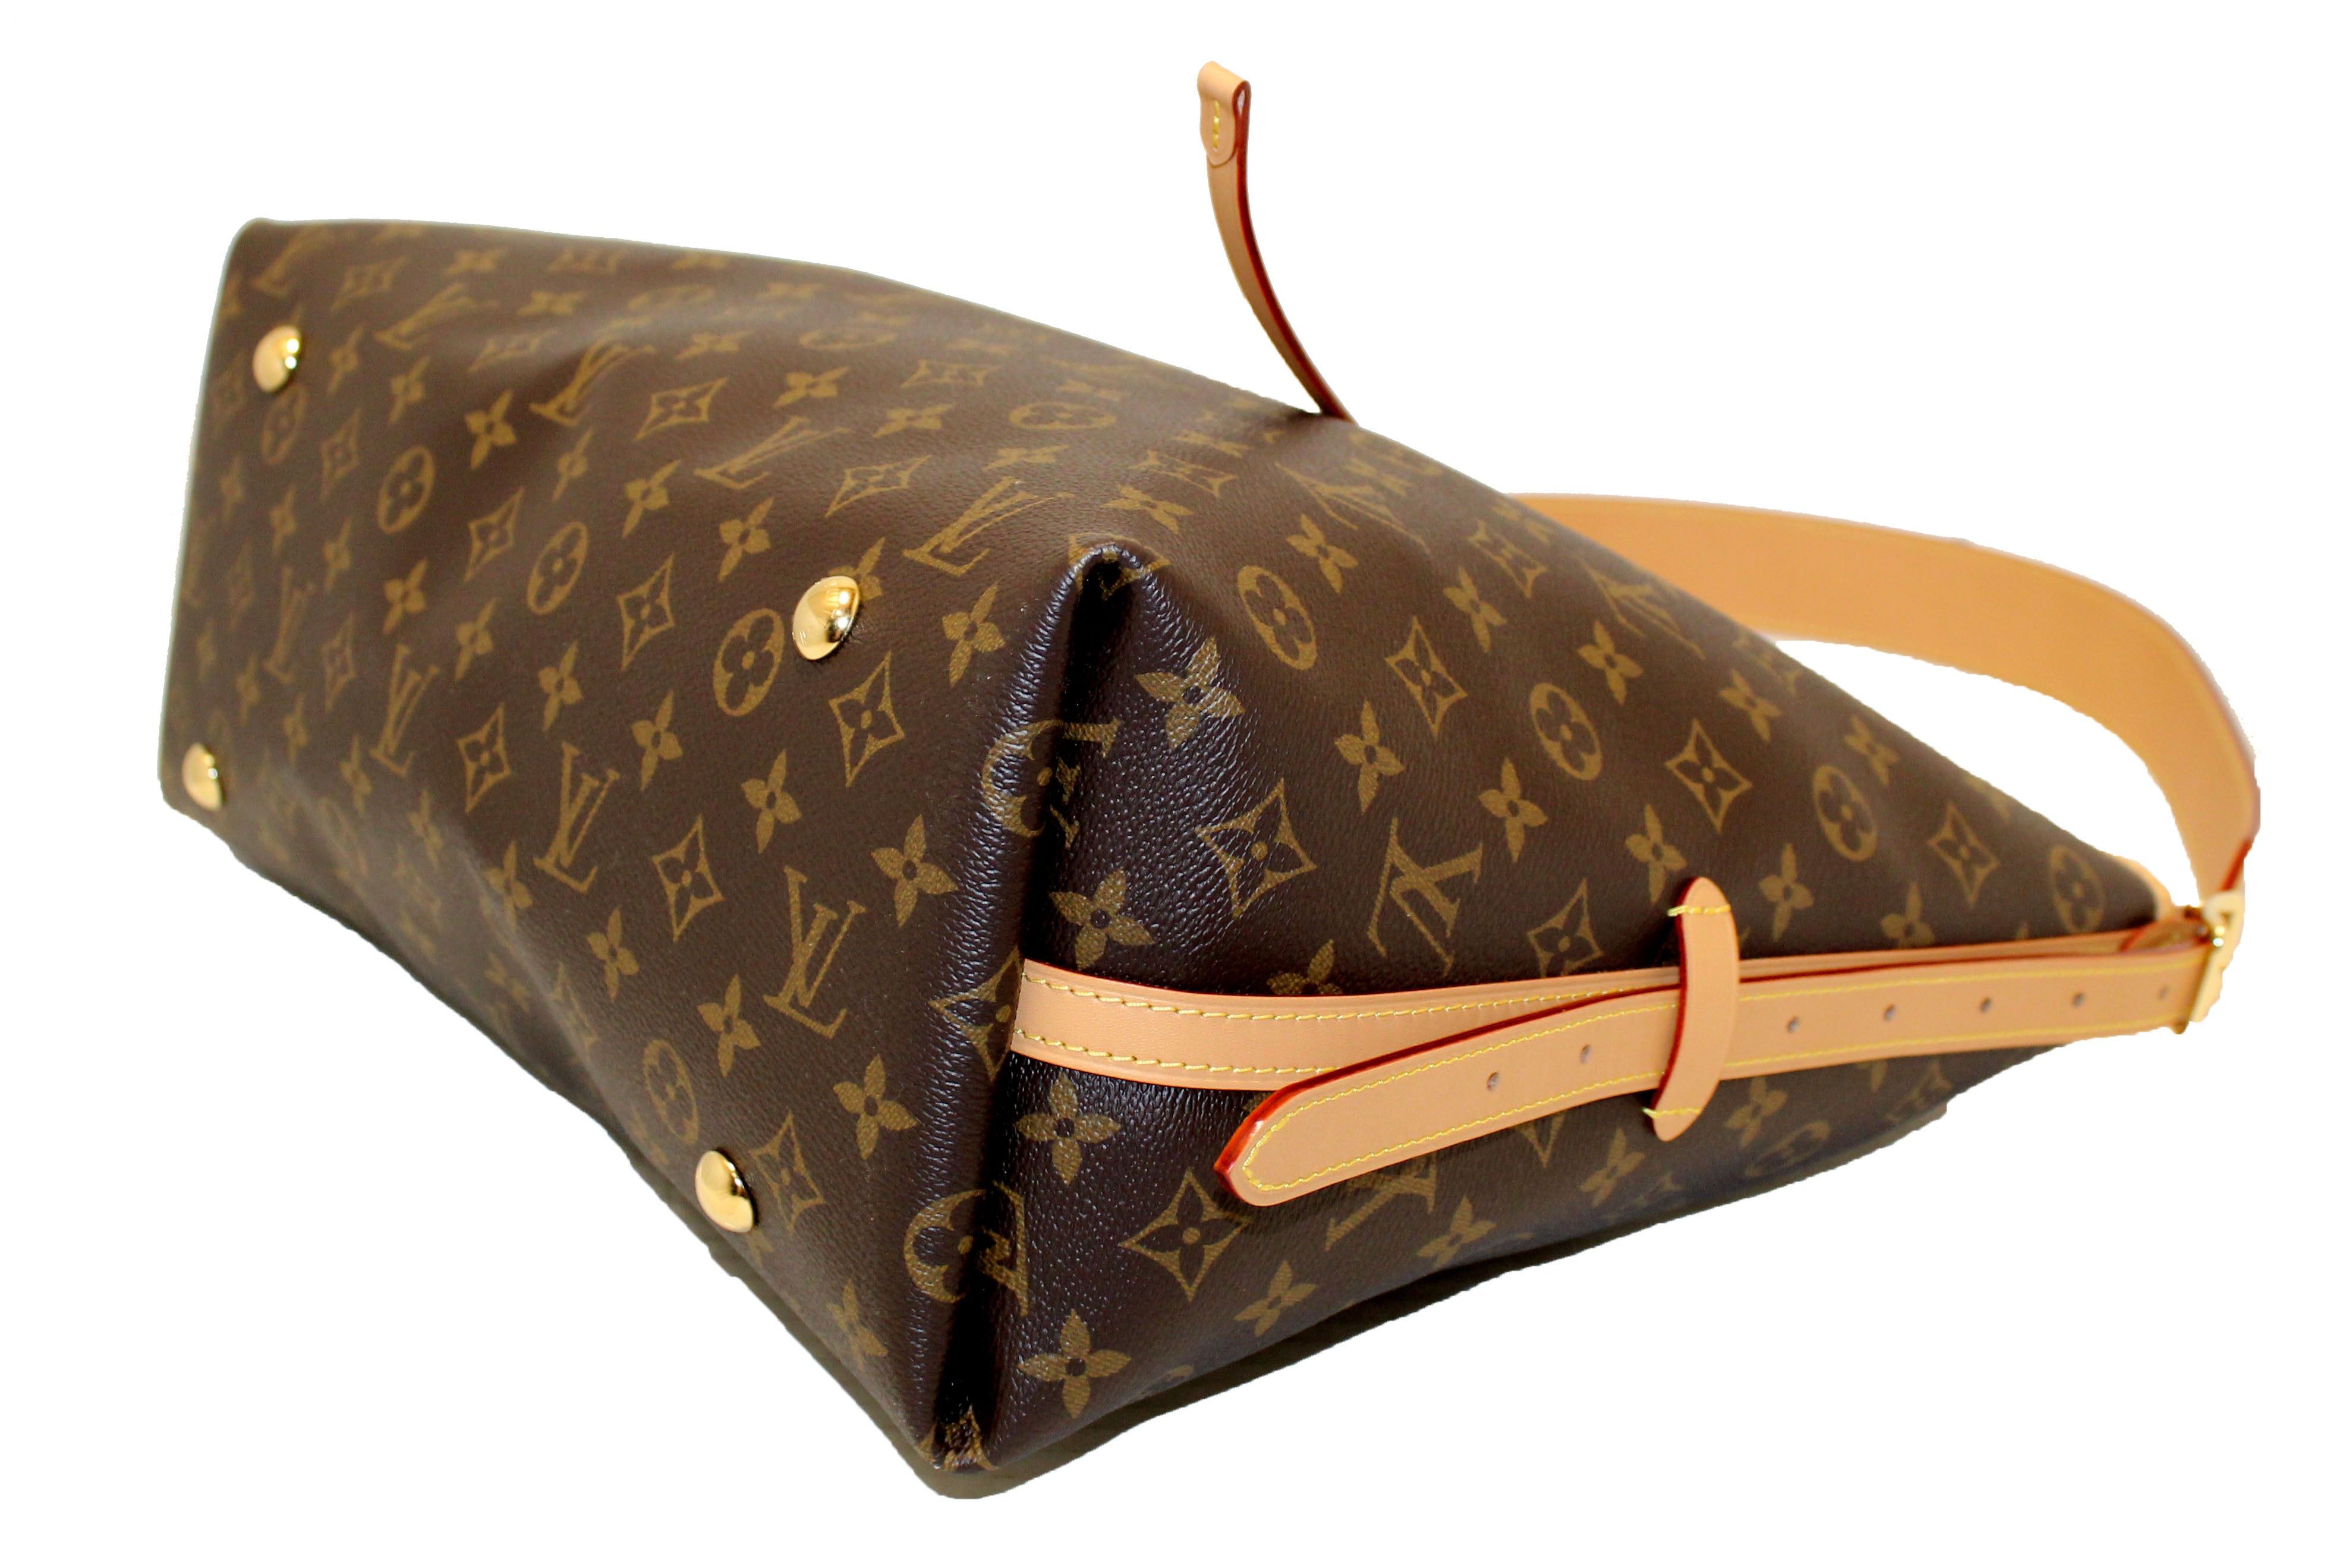 Louis Vuitton, Bags, Authentic Louis Vuitton Hobo Bag